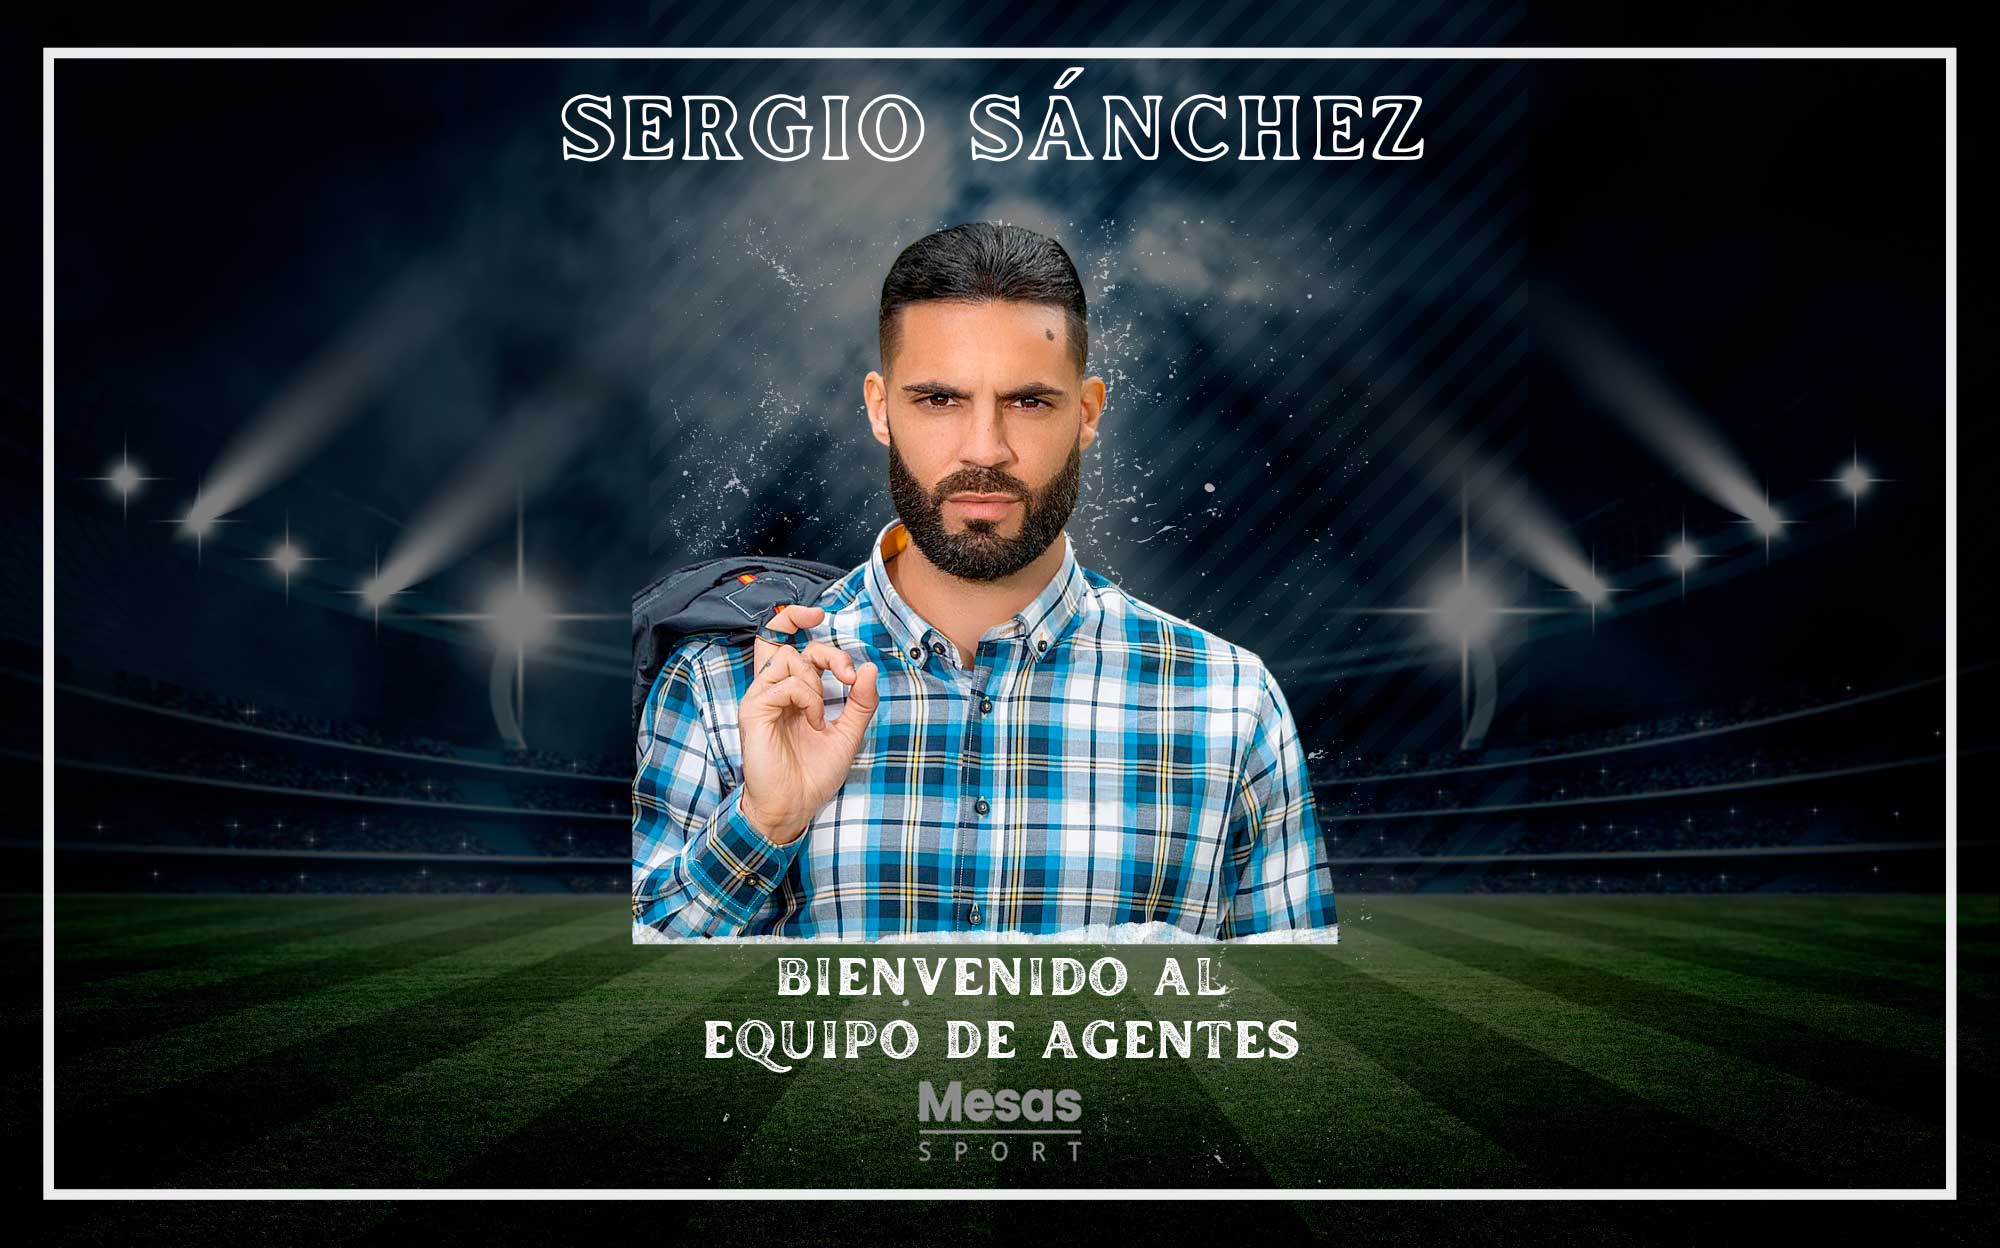 Imagen de Sergio Sánchez como Agente Mesas Sport